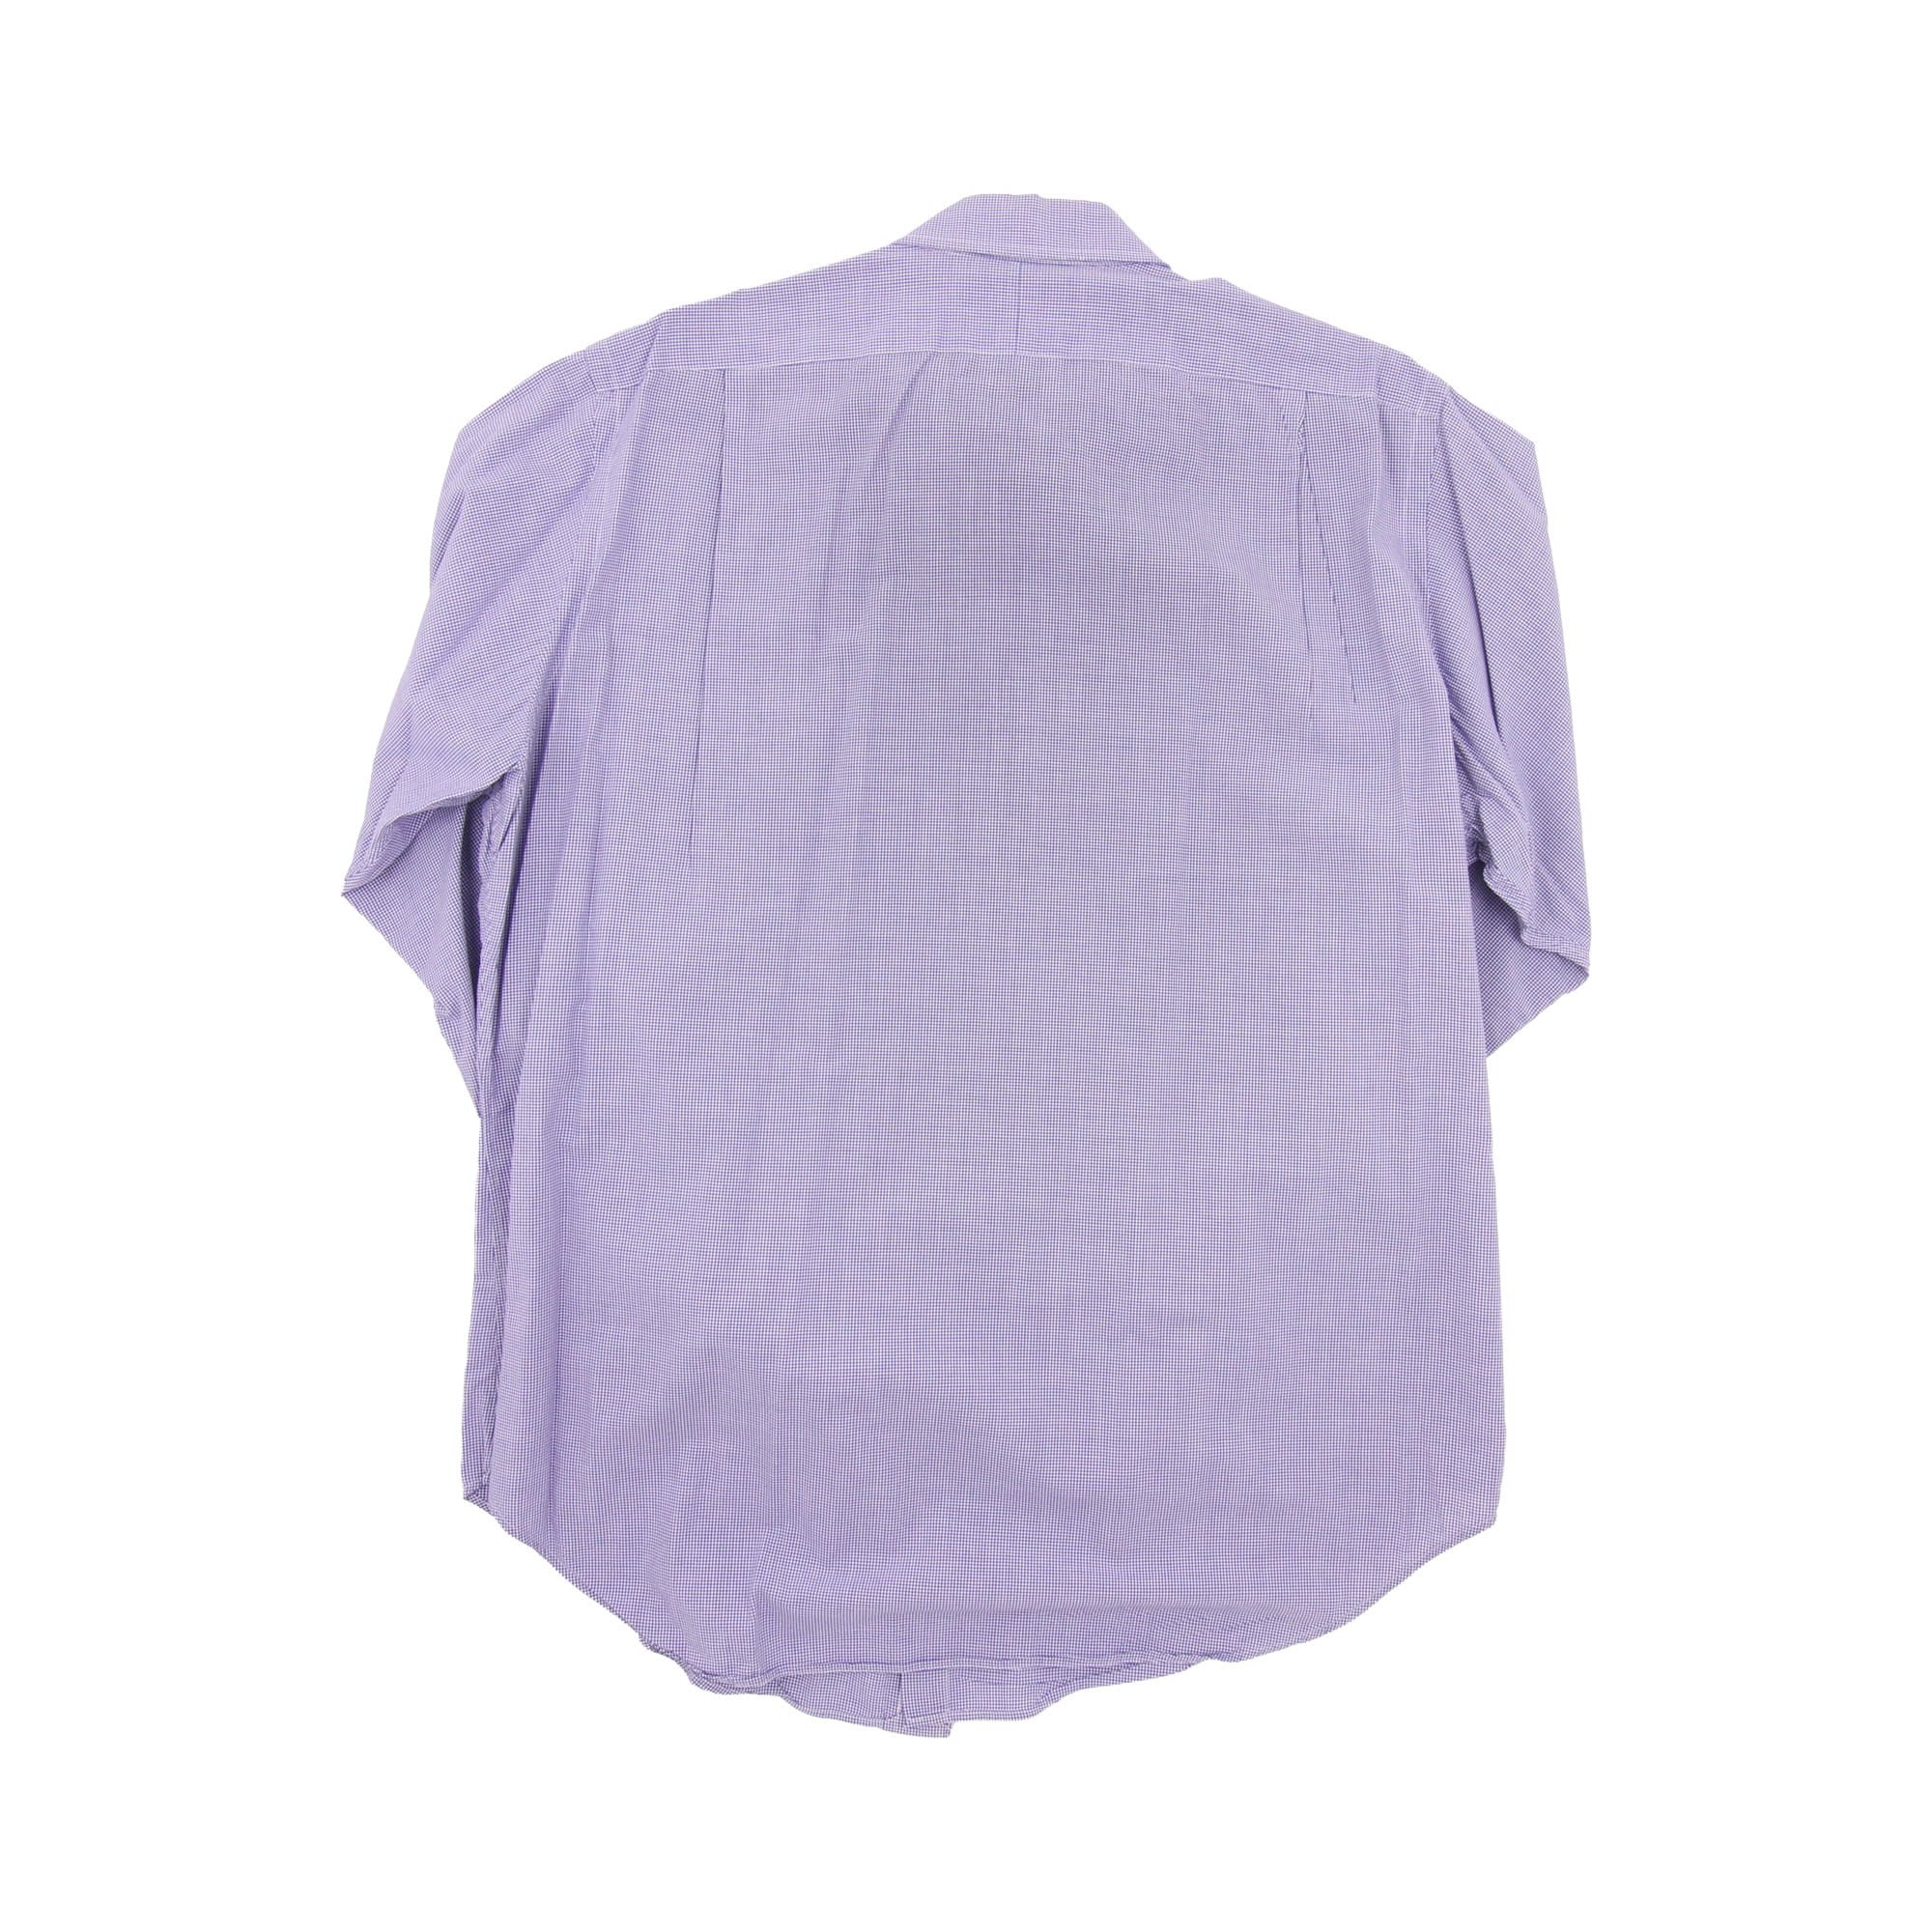 Polo Ralph Lauren Long Sleeve Shirt -  L/XL